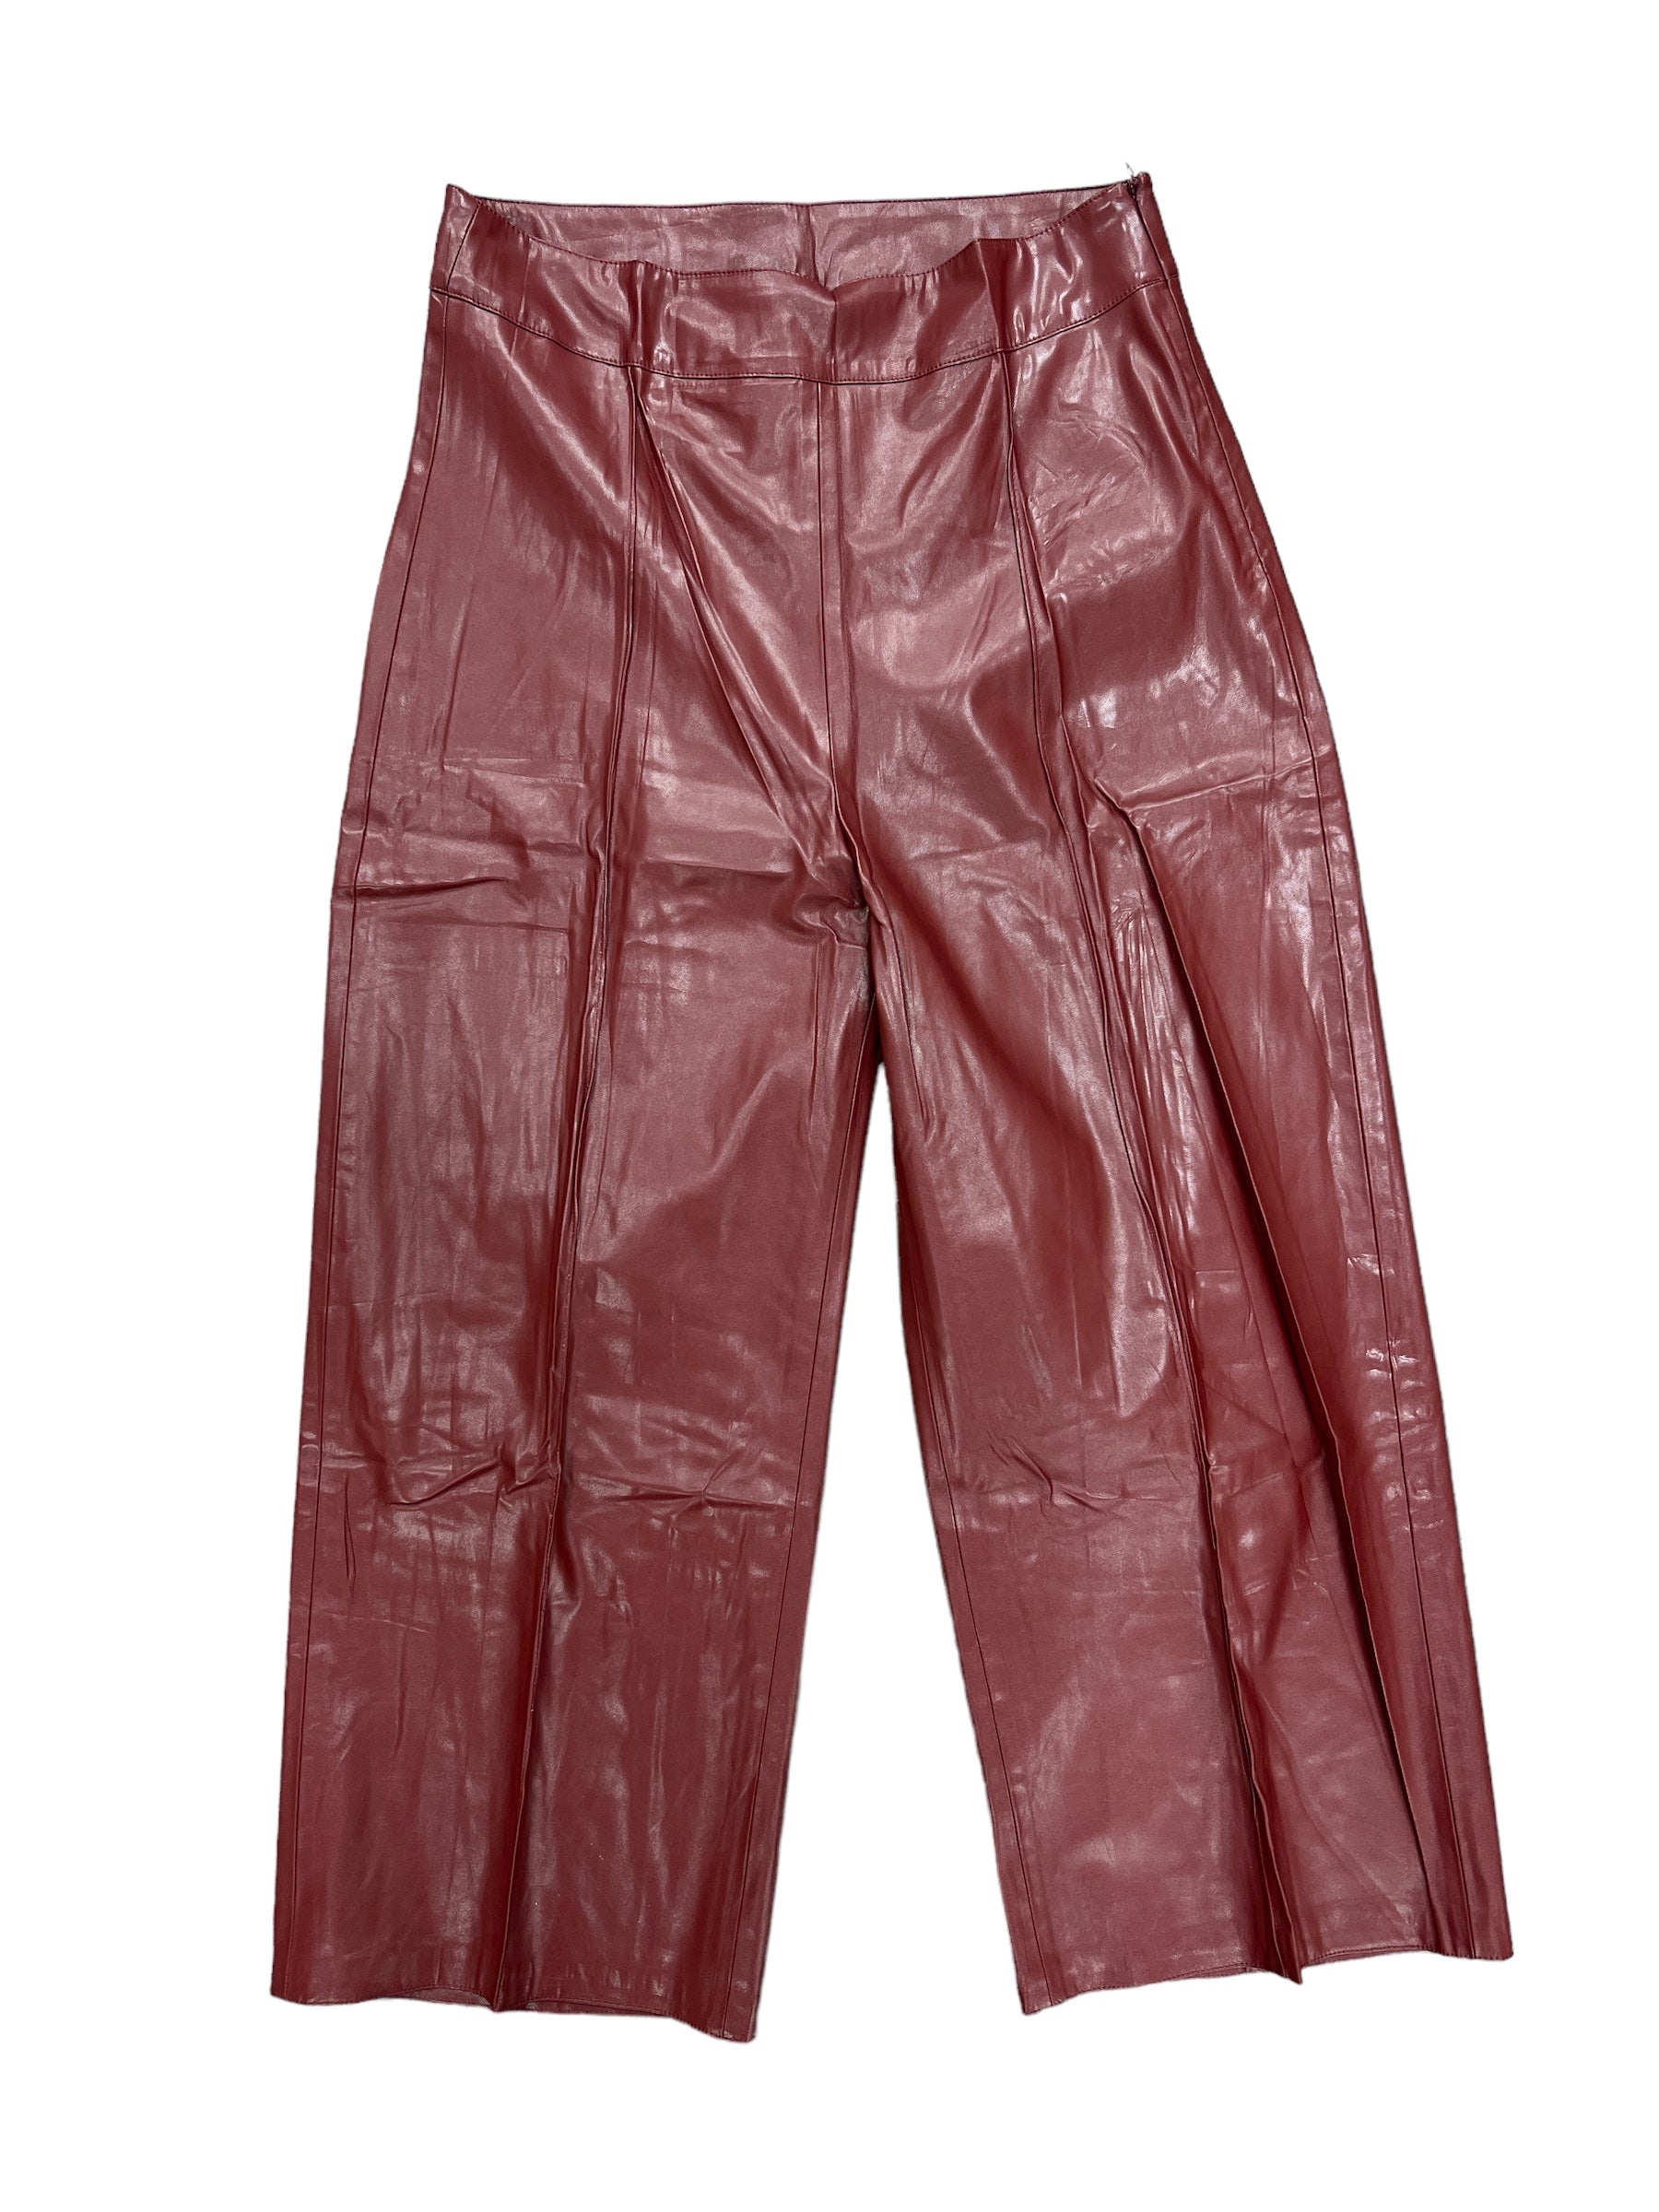 Sparkle Pant-230 Pants-Simply Stylish Boutique-Simply Stylish Boutique | Women’s & Kid’s Fashion | Paducah, KY